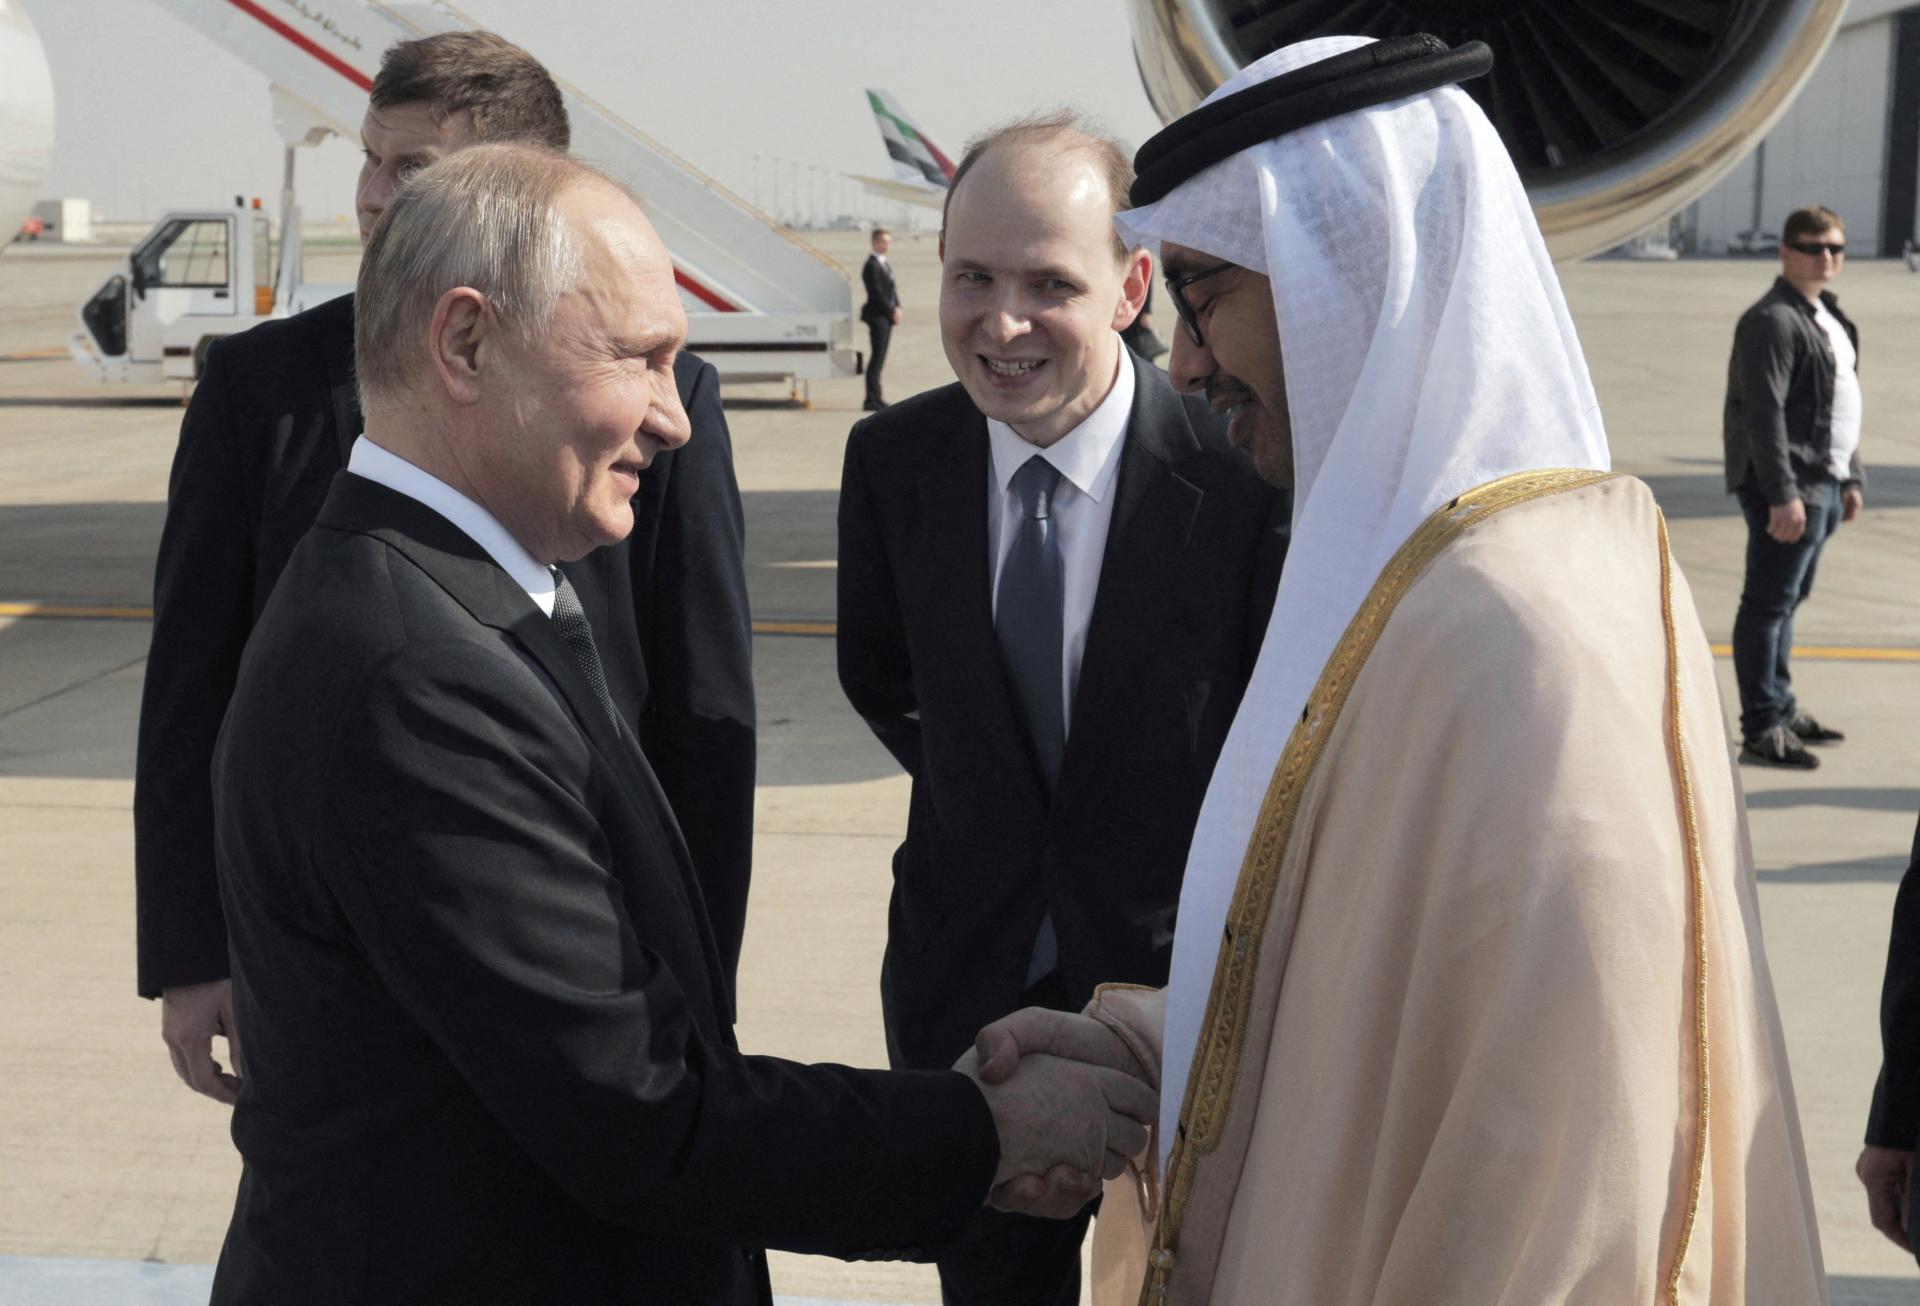 Putina privítali v Emirátoch. Jeho pozícia vo svete sa zlepšuje, nahrávajú mu viaceré udalosti, píše Bloomberg